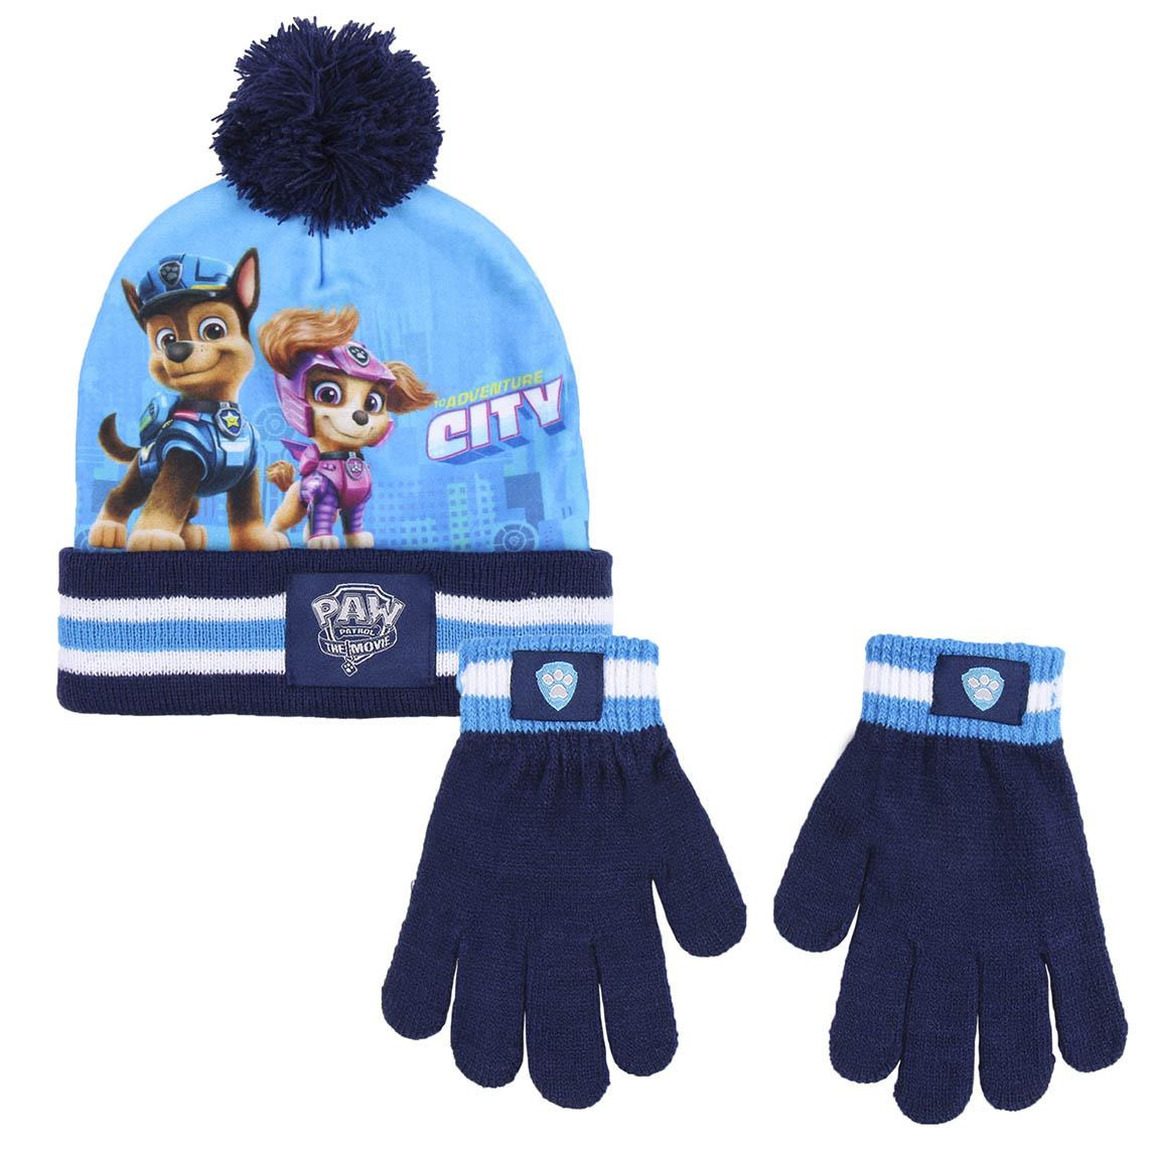 De volgende verkenner Circulaire Paw Patrol winter set blauw voor kinderen met muts en handschoenen -  Partyshopper Kleding accessoires winkel